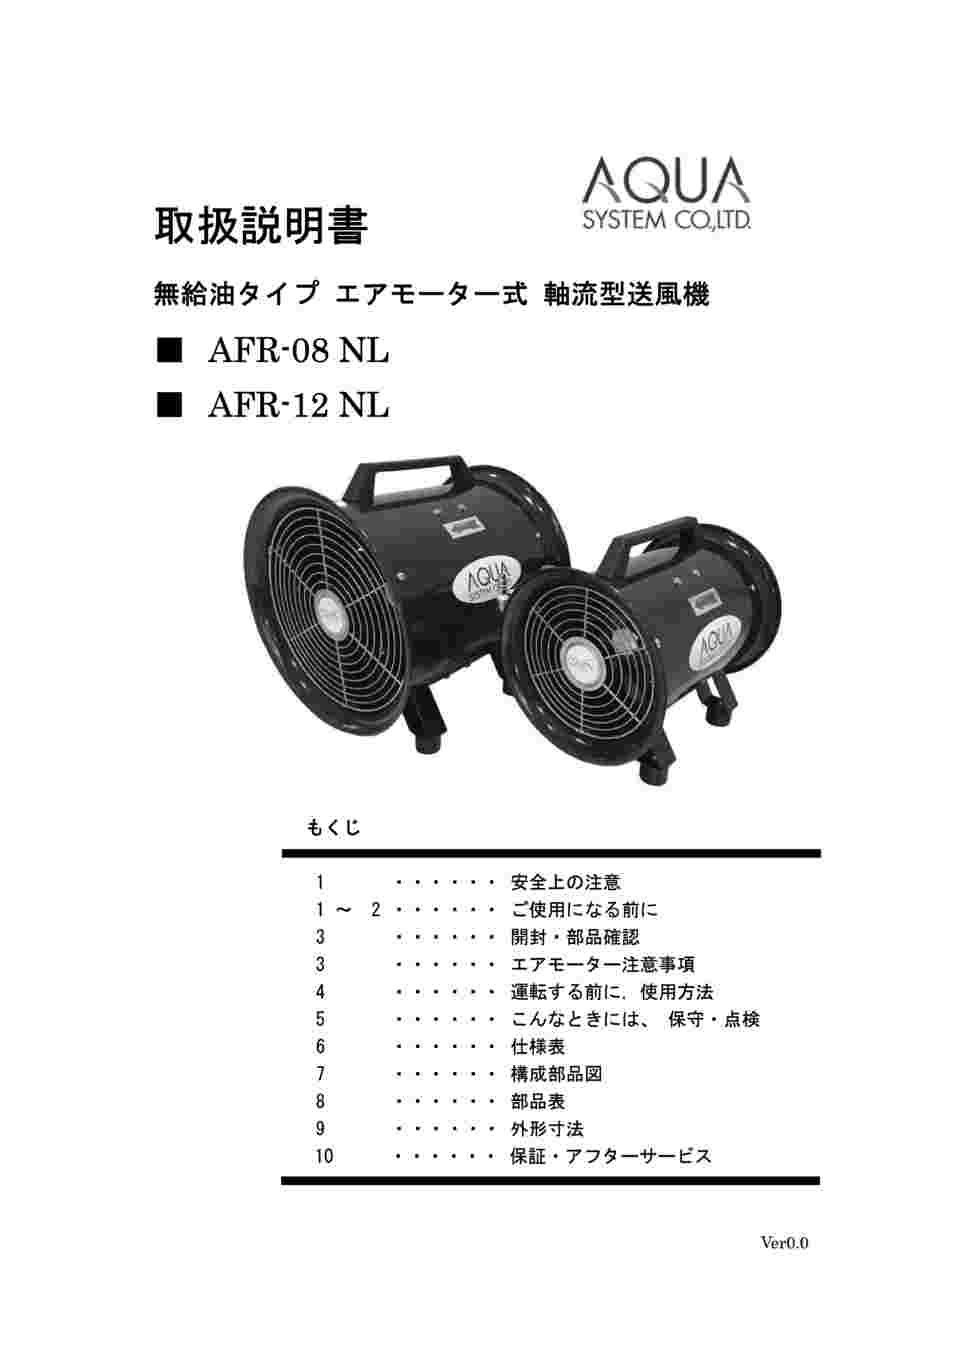 64-8891-29 無給油エアモーター式送風機（軸流型） AFR-12NL 【AXEL